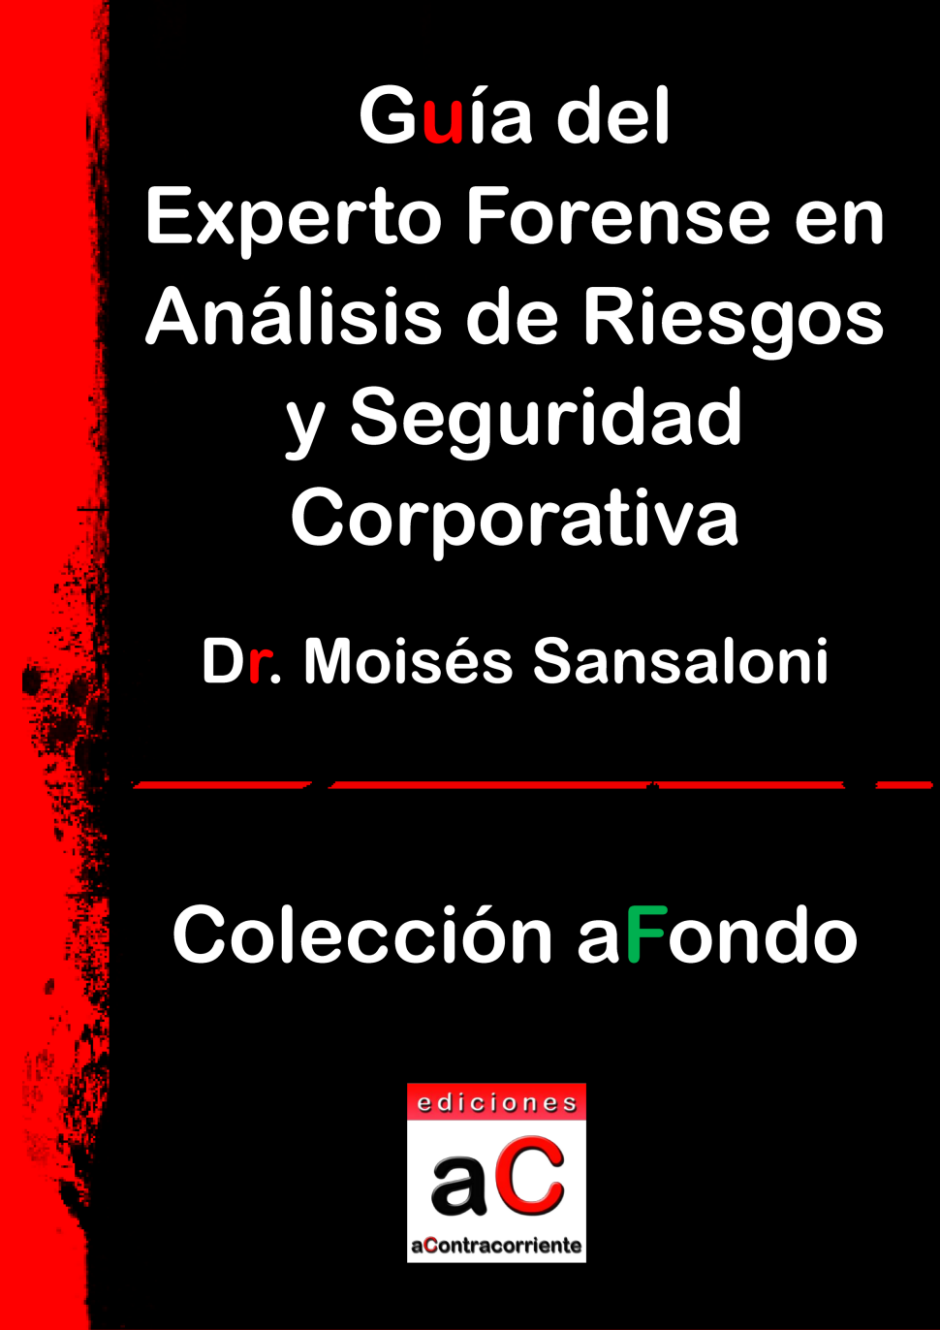 Guía del experto forense en análisis de riesgos y seguridad corporativa, Ediciones aContracorriente